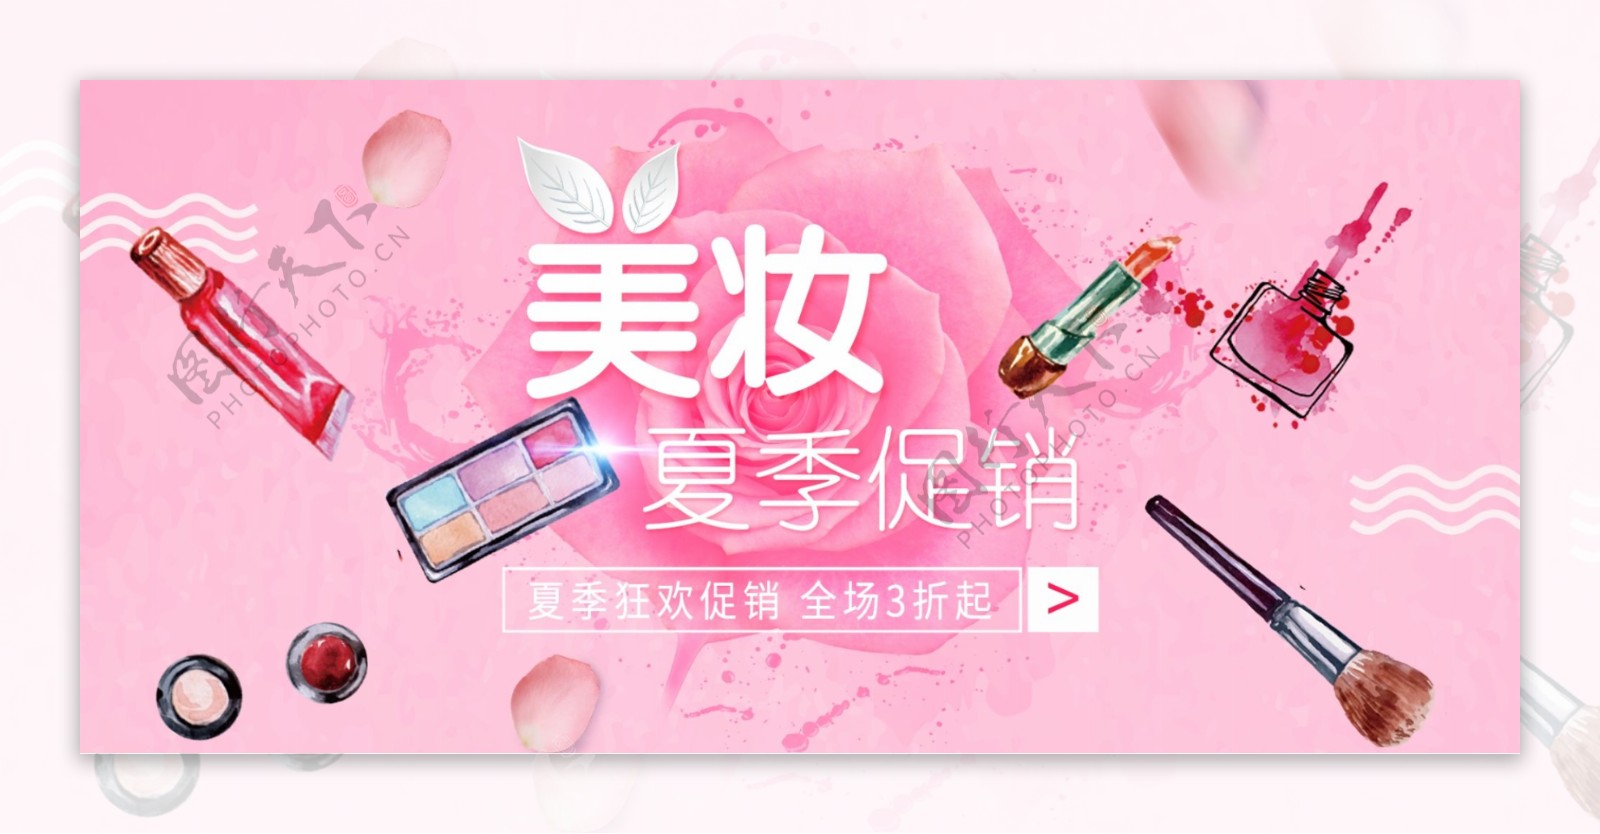 美妆夏季促销淘宝天猫电商大促背景模板海报